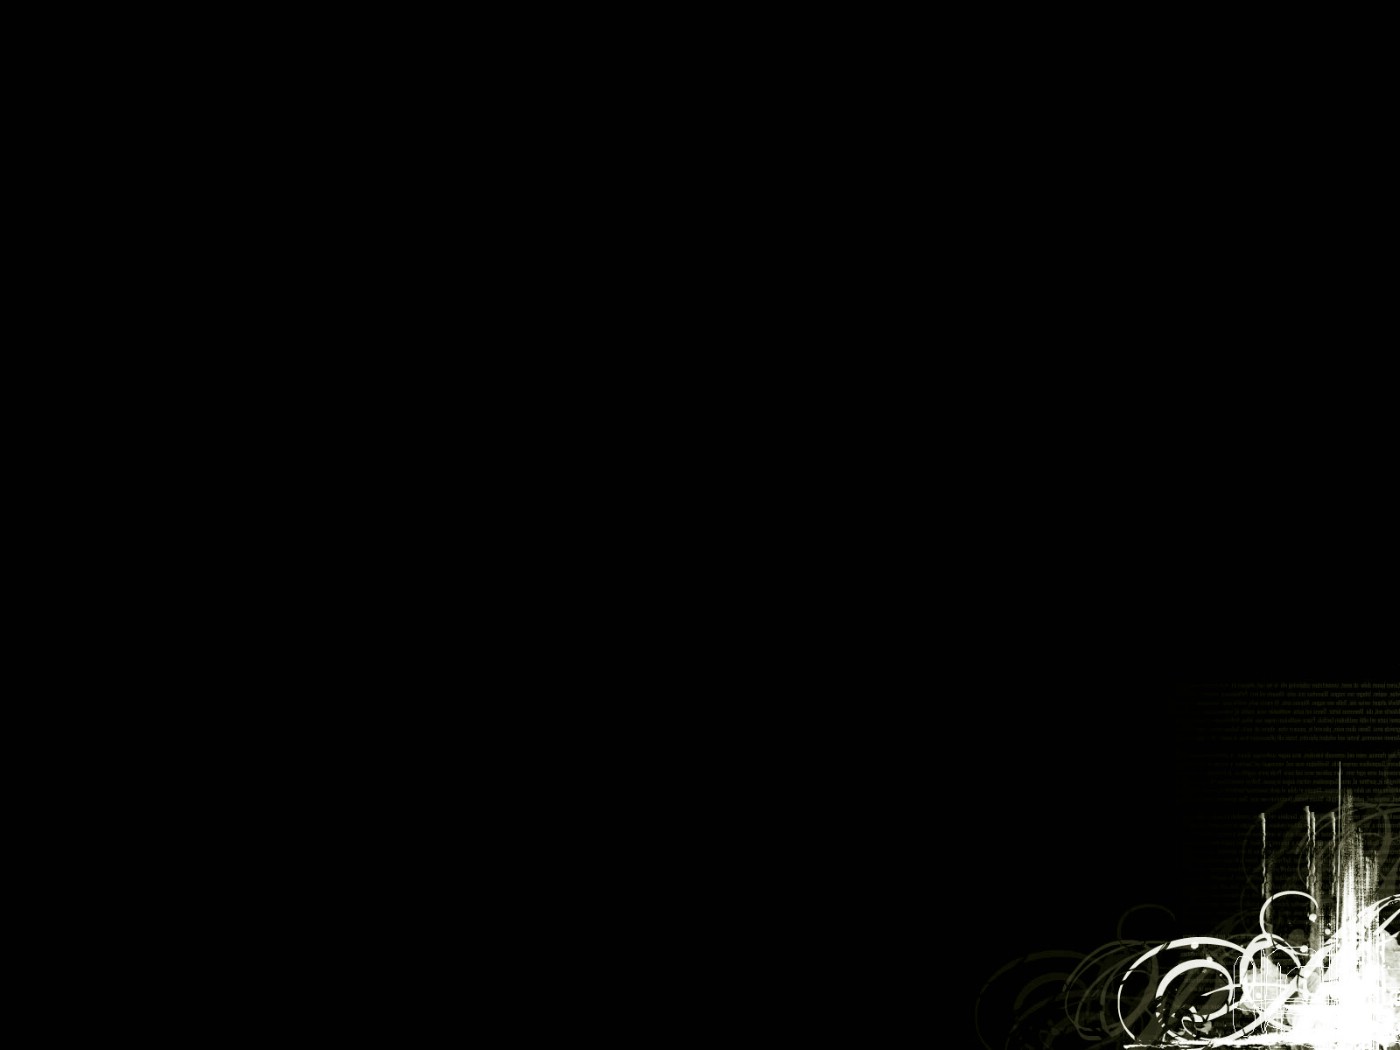 壁纸1400x1050黑色电脑桌面壁纸下载壁纸 黑色电脑桌面壁纸下载壁纸 黑色电脑桌面壁纸下载图片 黑色电脑桌面壁纸下载素材 精选壁纸 精选图库 精选图片素材桌面壁纸